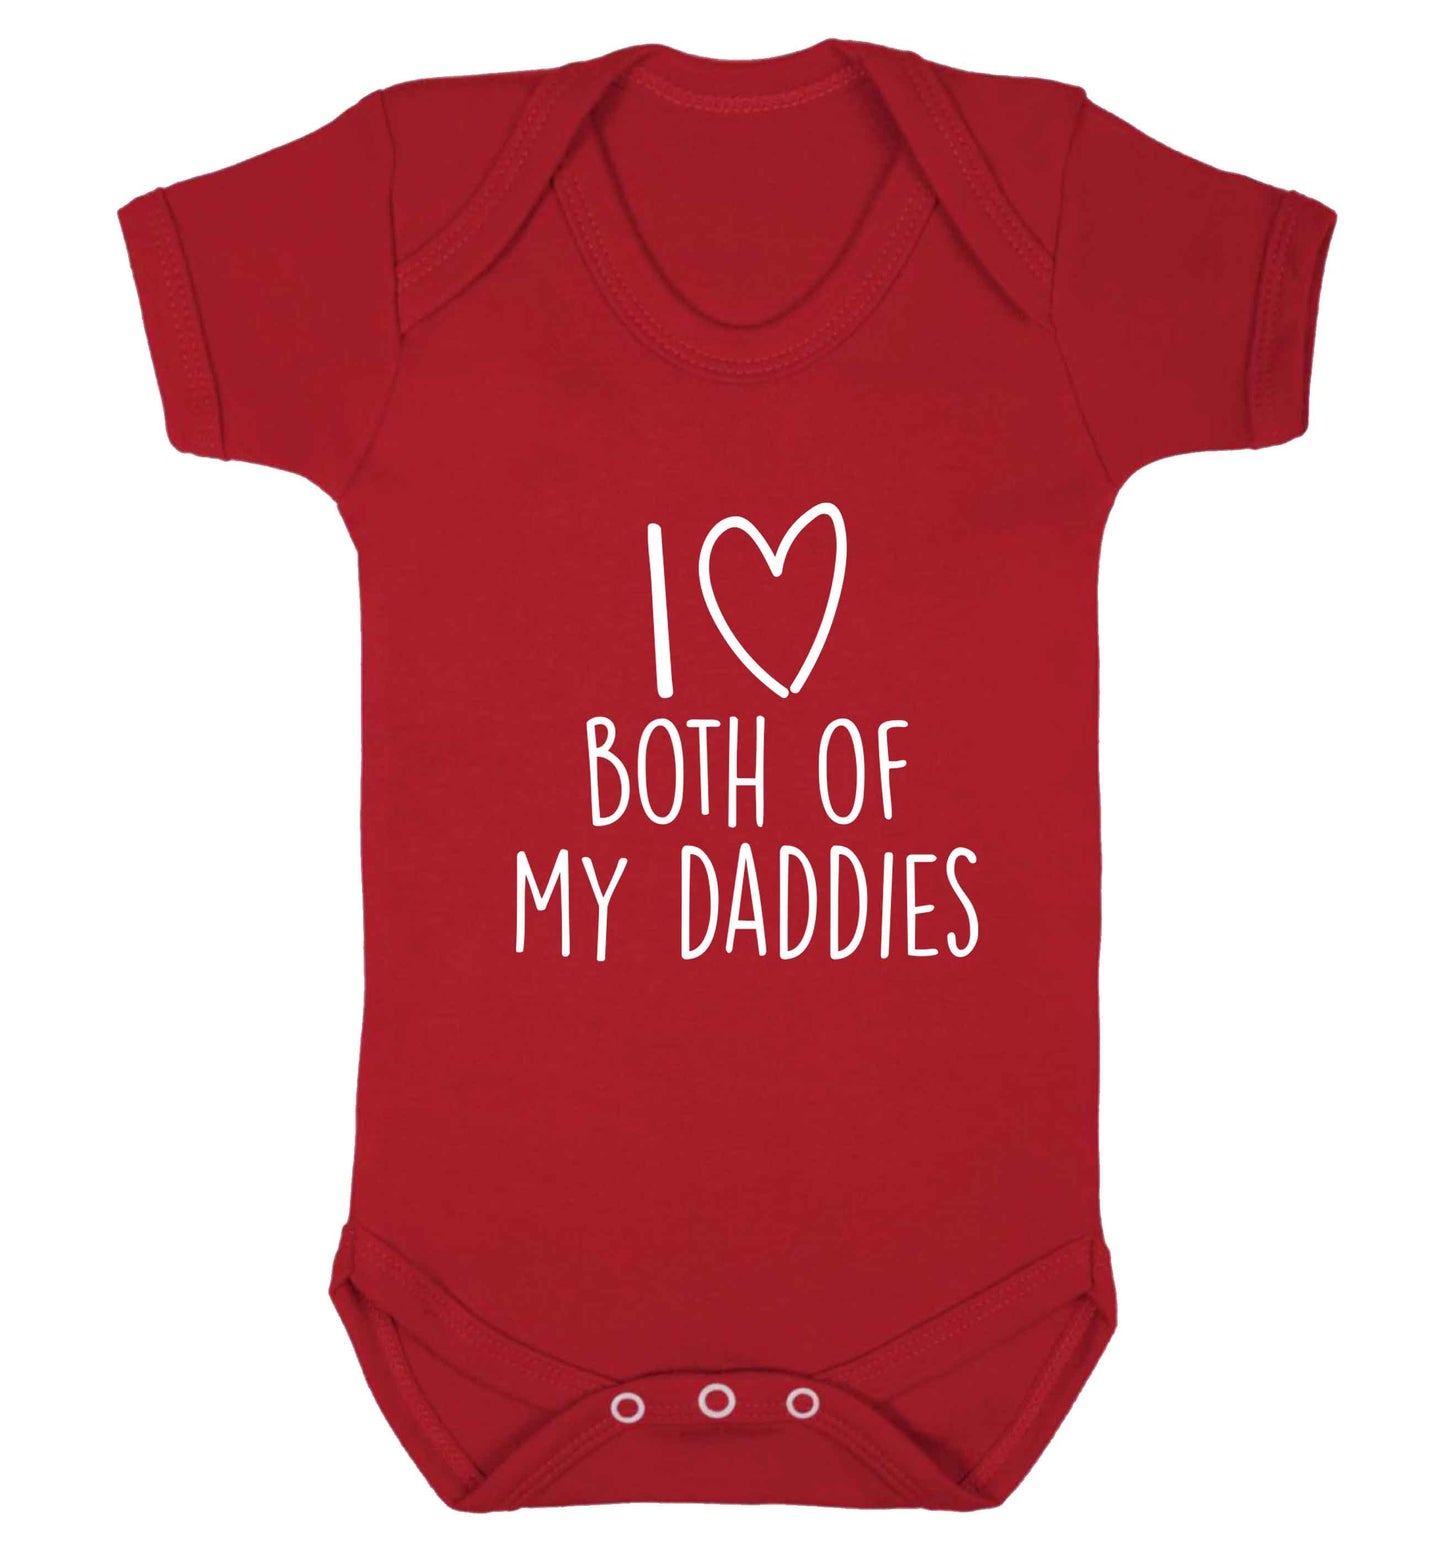 I love both of my daddies baby vest red 18-24 months